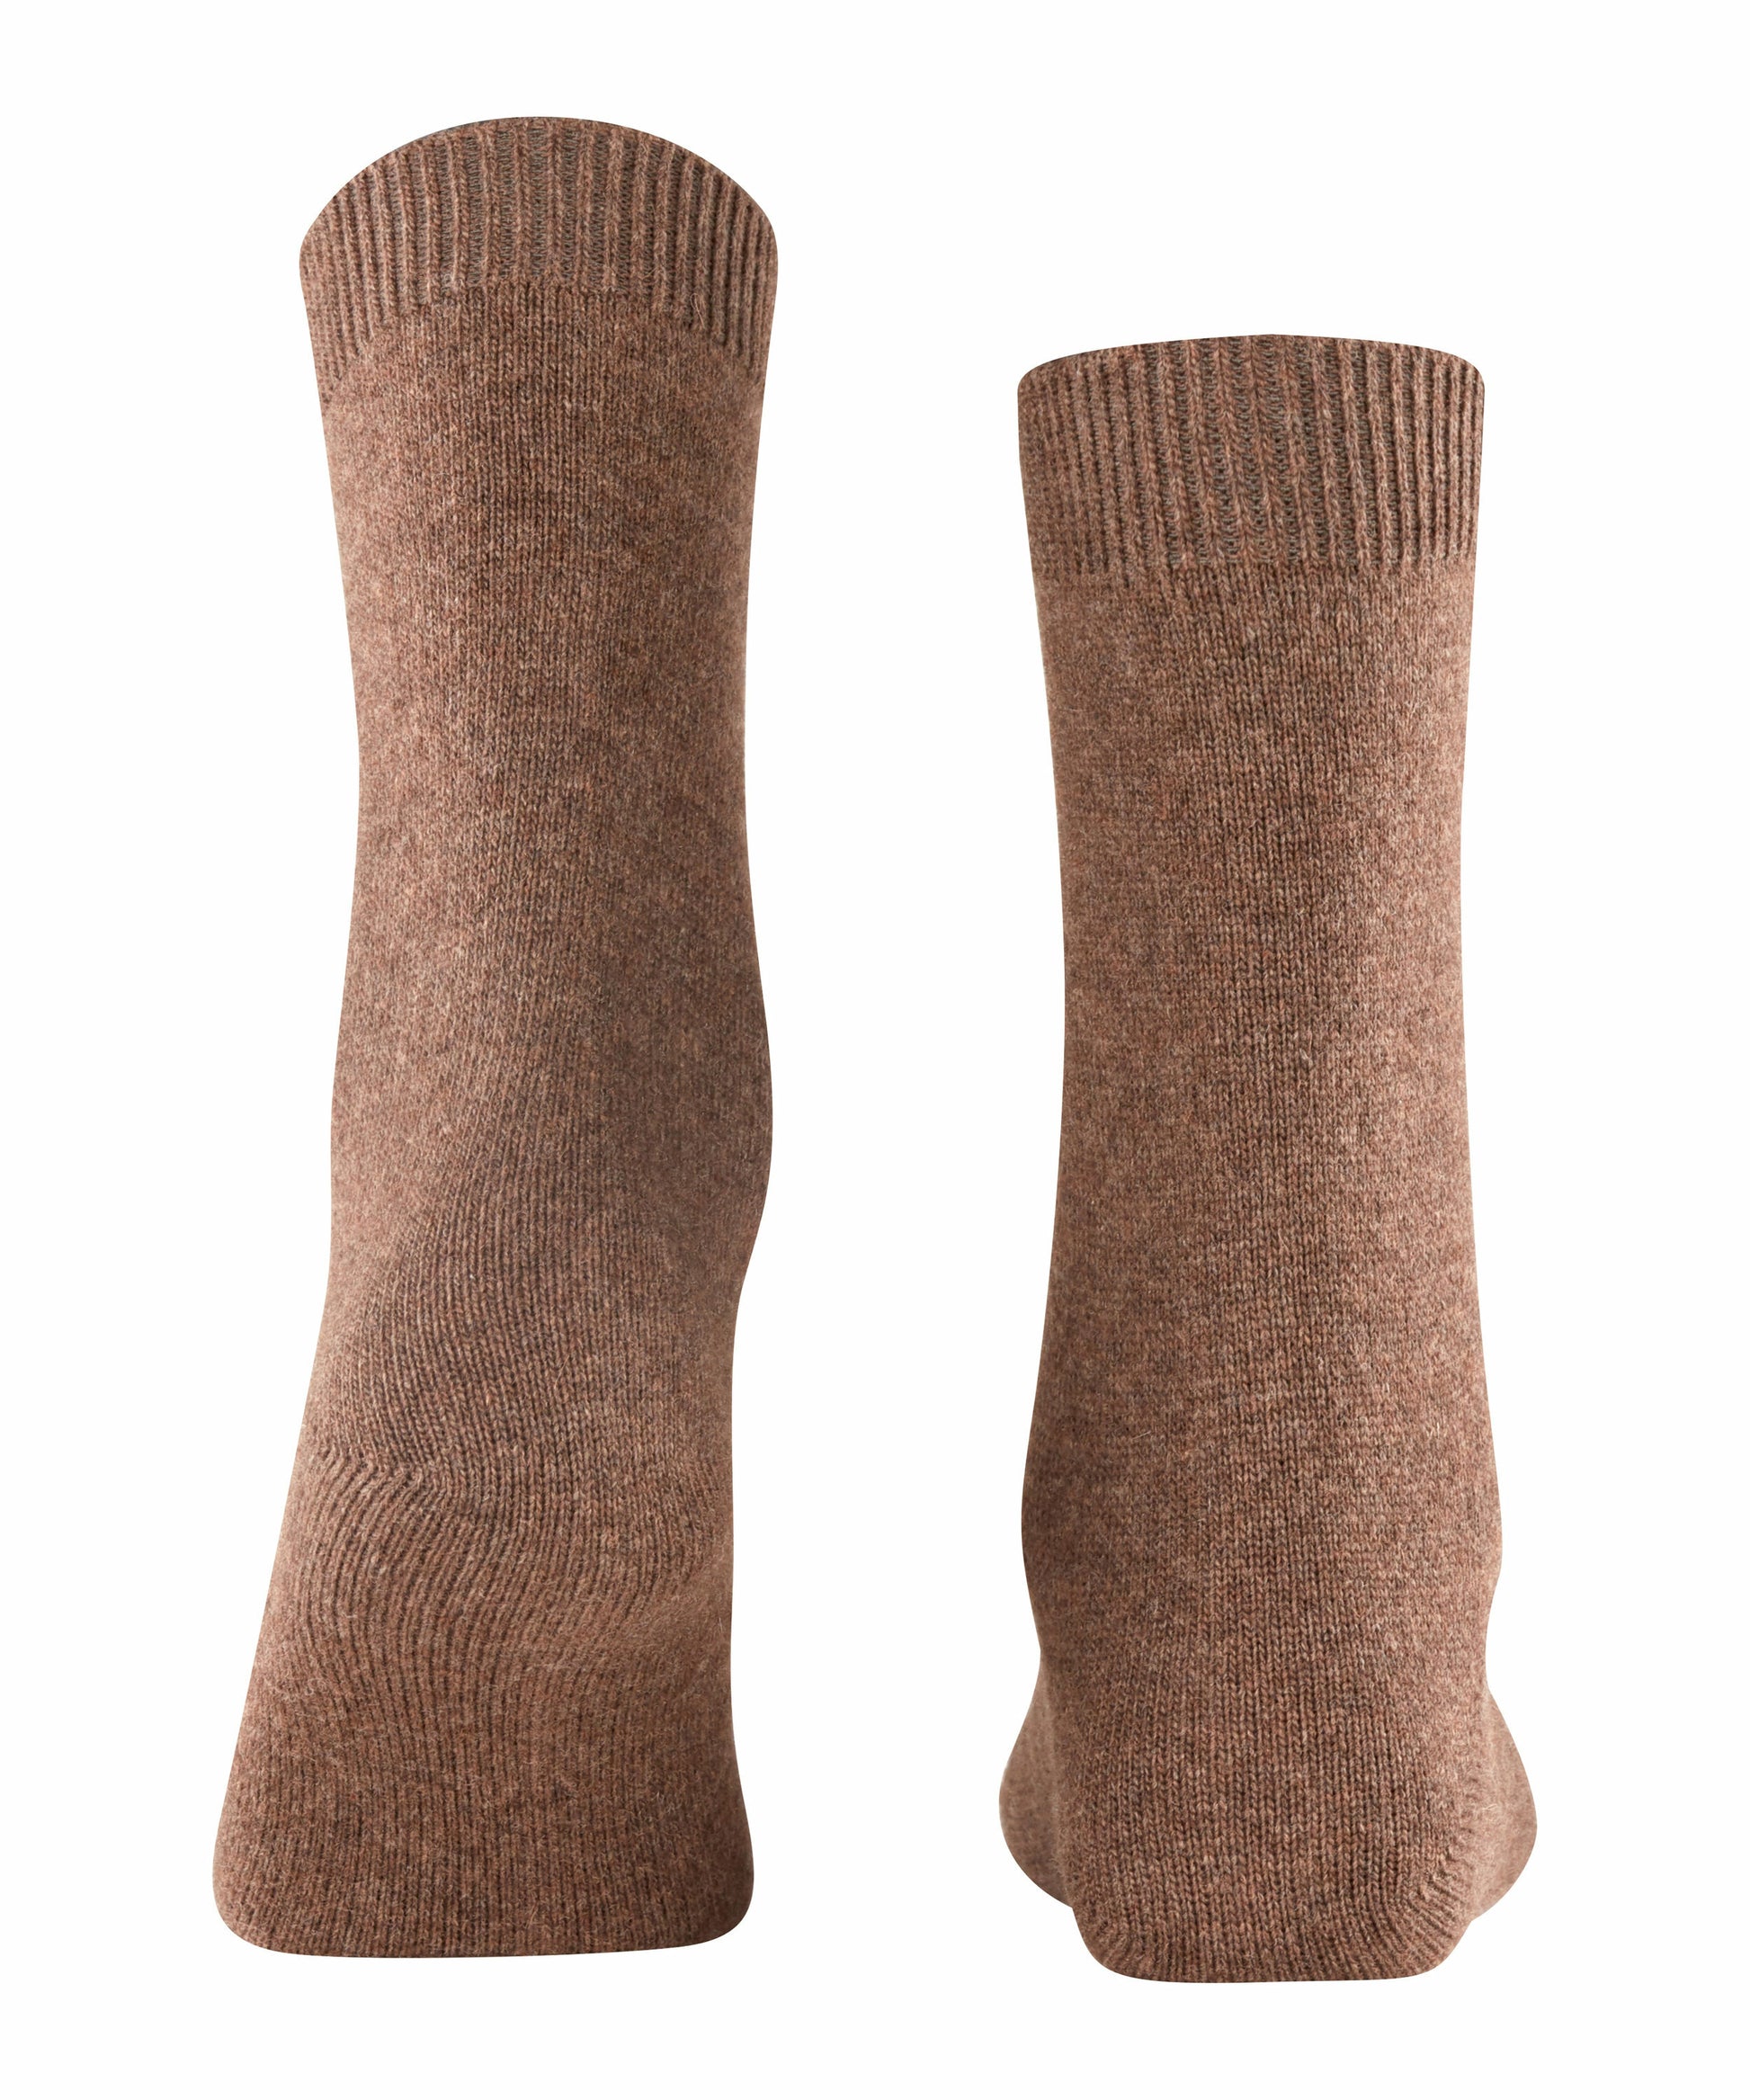 Socken Cosy Wool (Jasper)